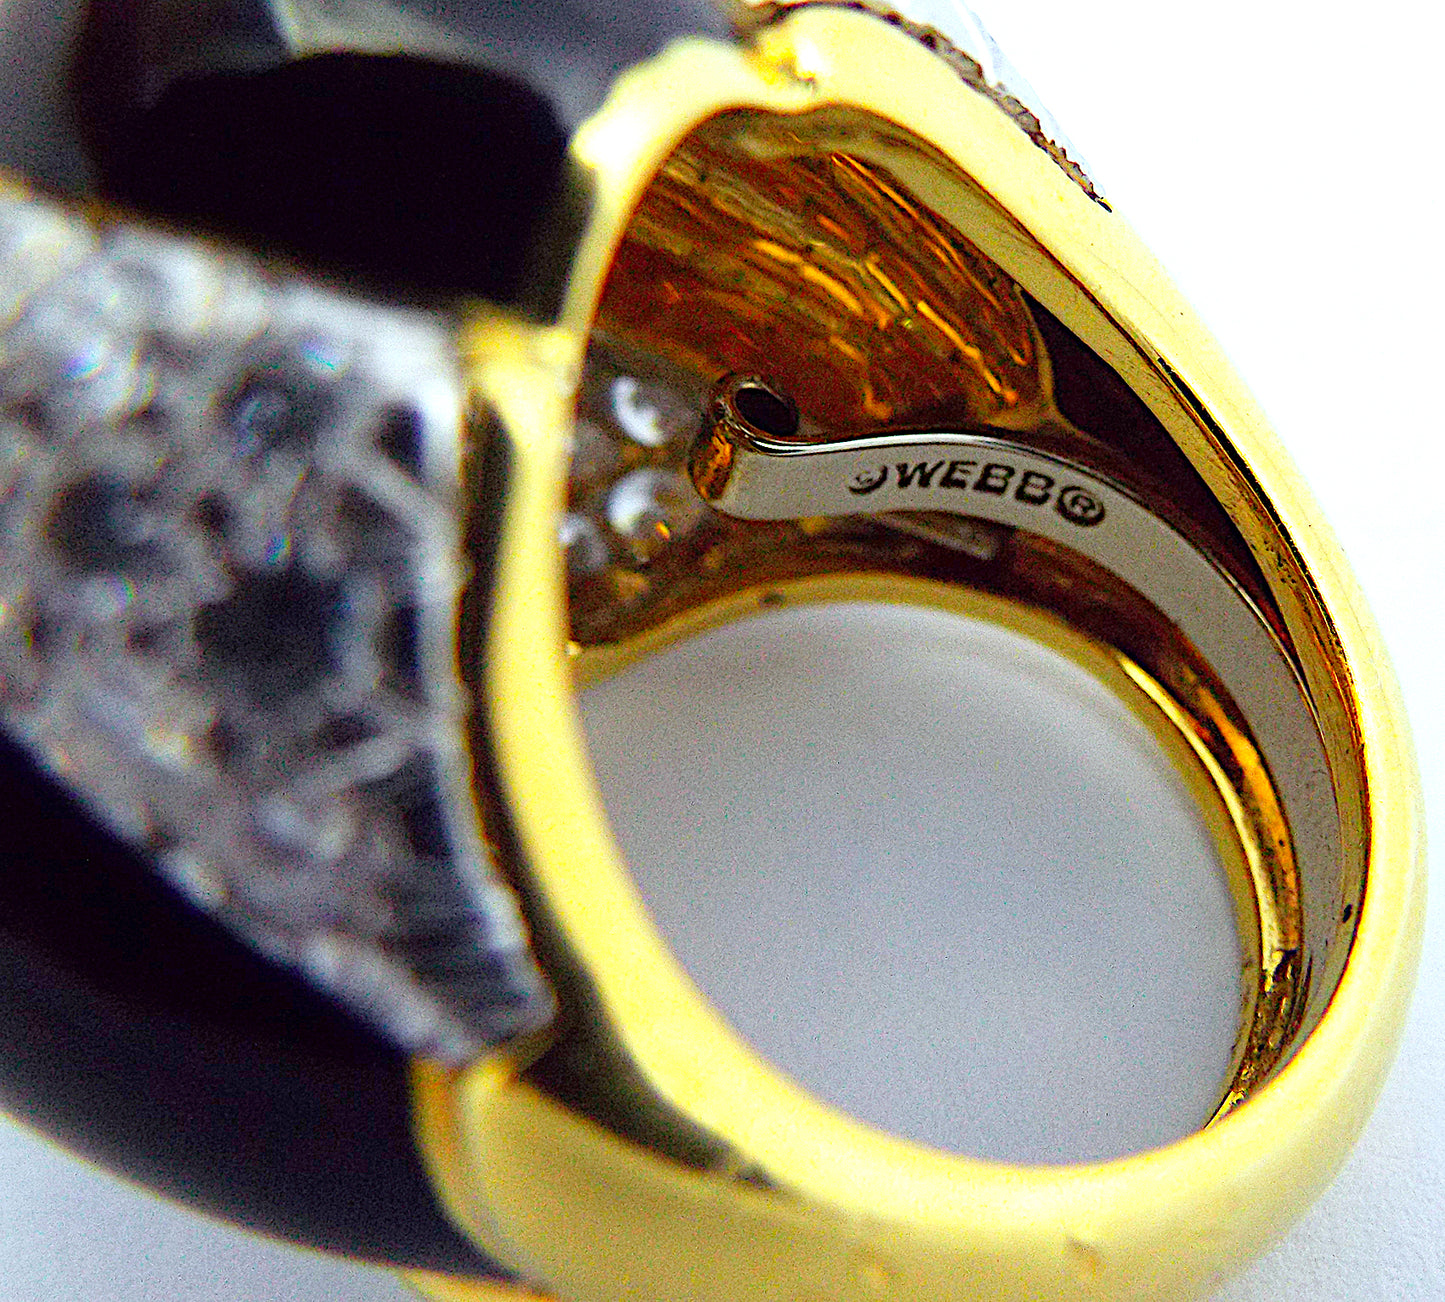 David Webb Diamond Enamel Gold Platinum Ring